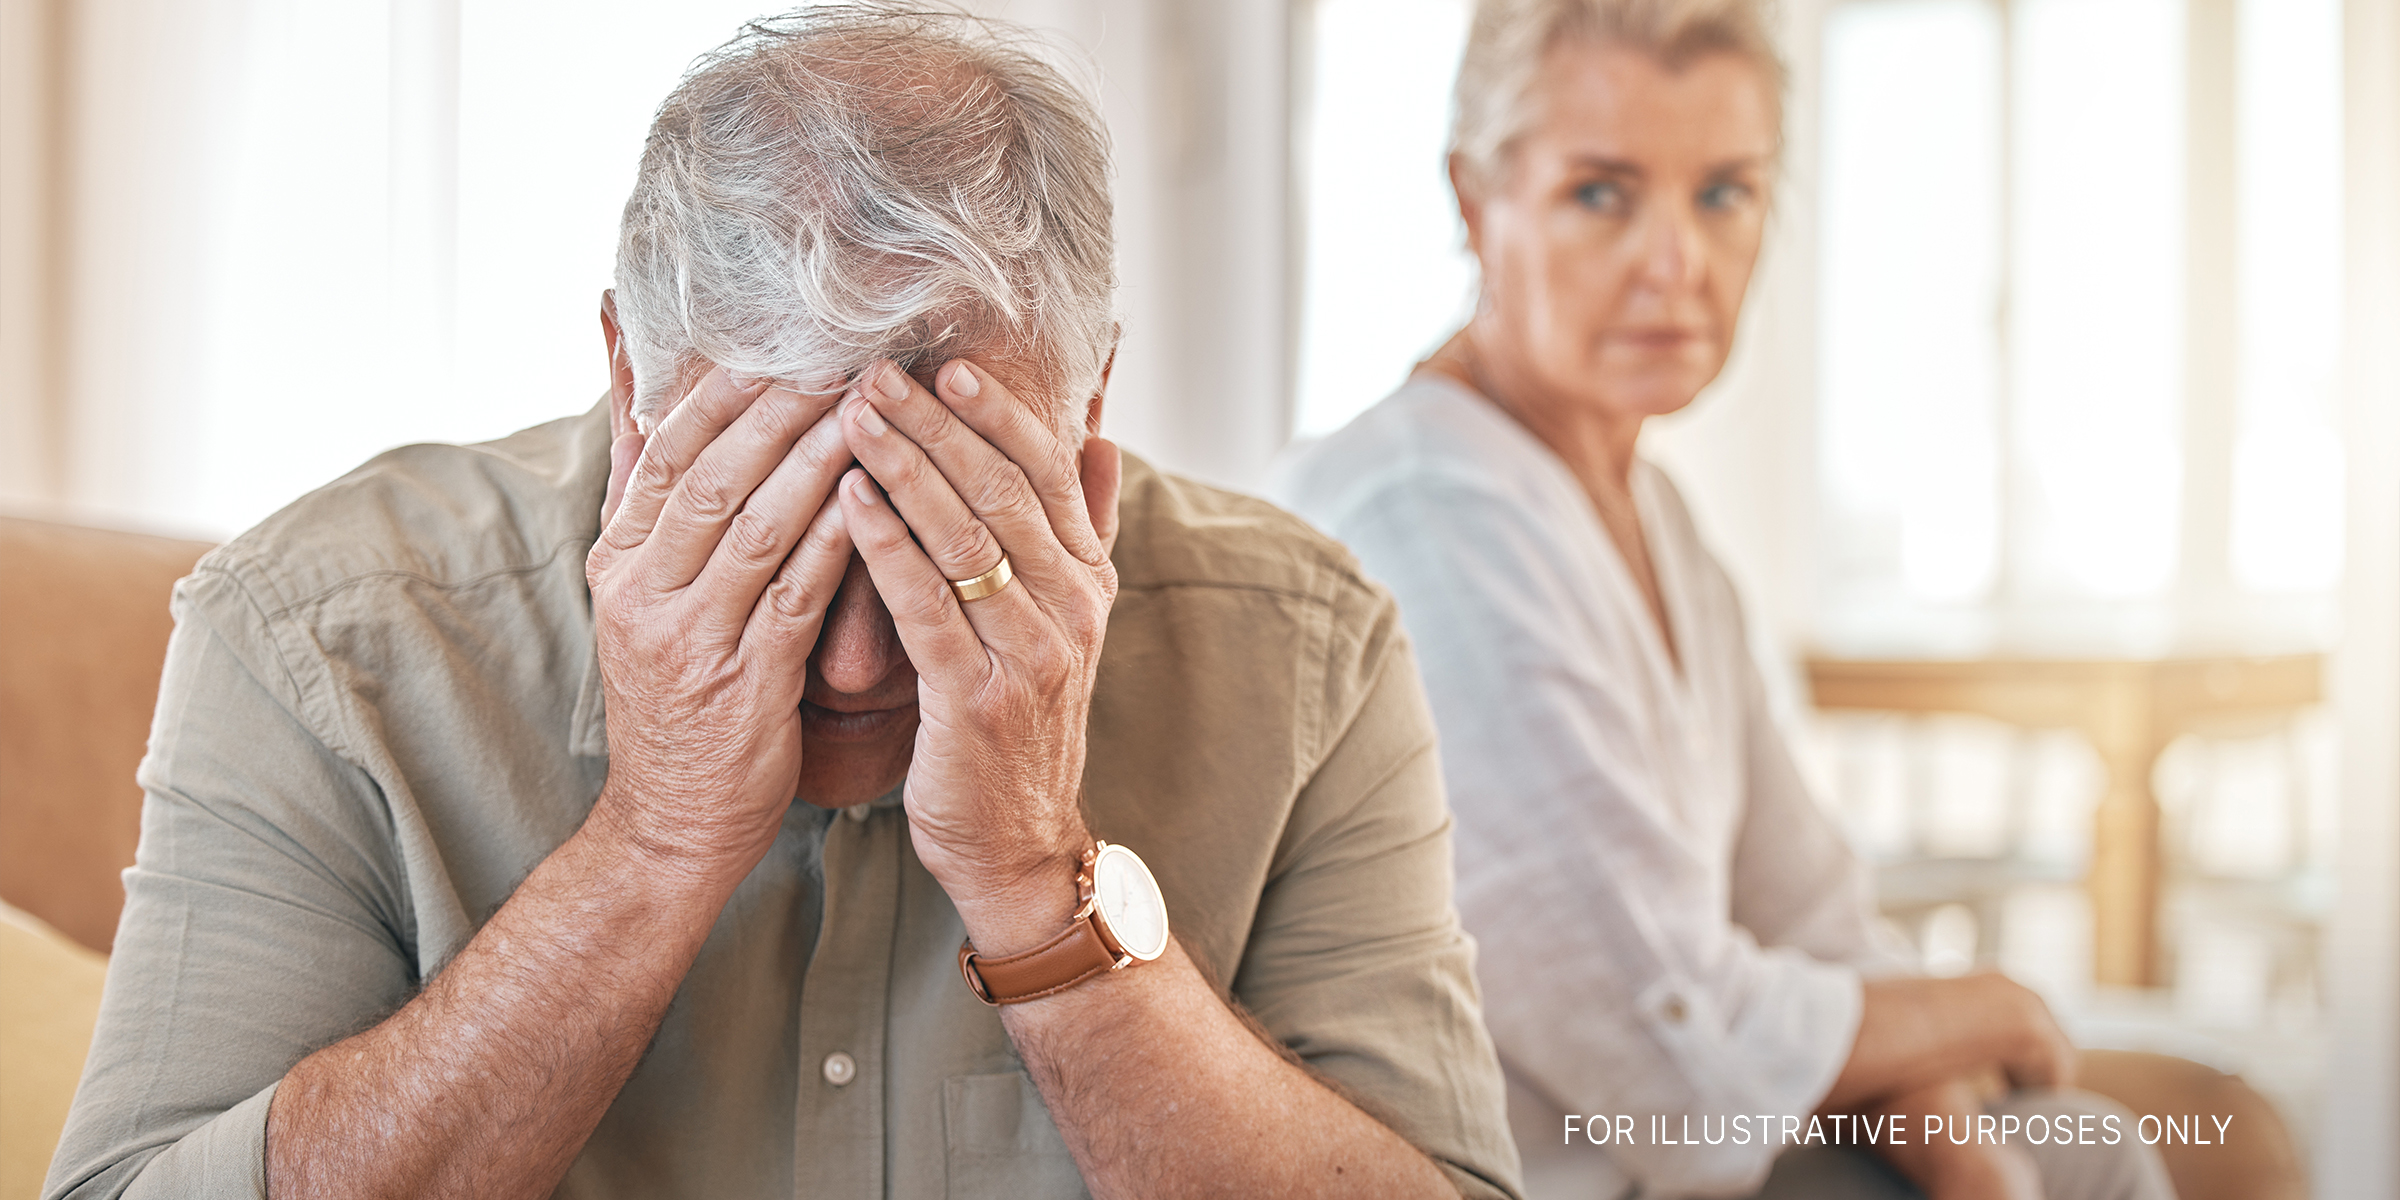 An elderly man and woman | Source: Shutterstock